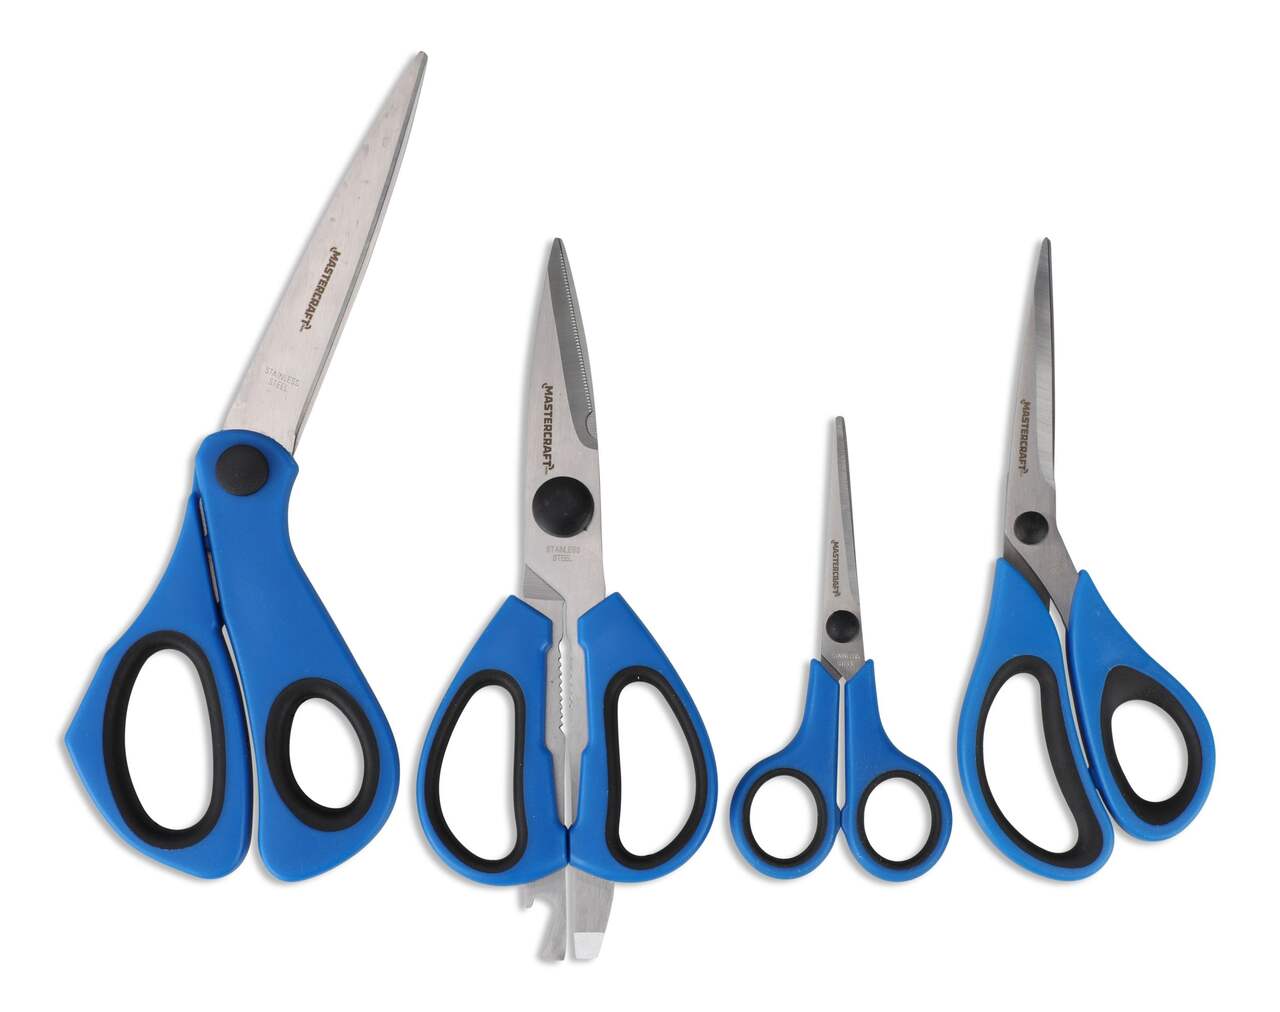 9 Piece Decorative Kraft Edgers Scissors + 4 Bonus Crafting Scissors USED